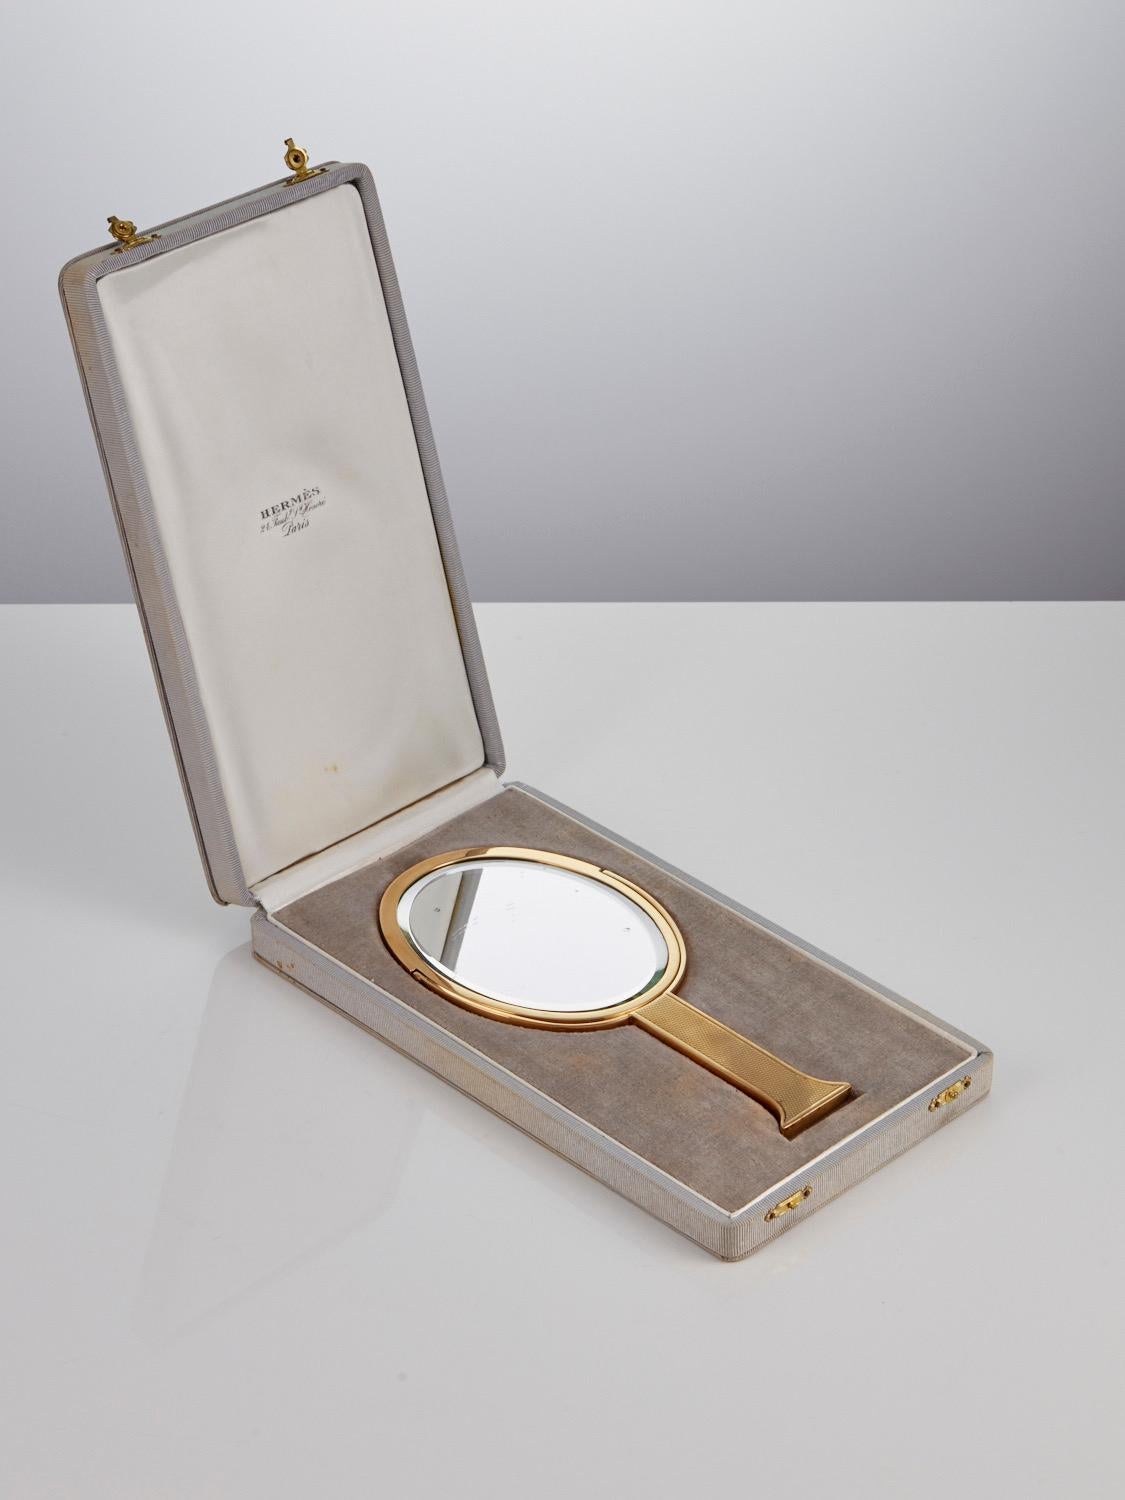 Miroir à main Hermès du milieu du 20e siècle, en boîte, en argent doré, marqué Paris et daté Circa 1950.

Ce charmant et élégant miroir à main Hermès possède un verre biseauté pivotant, un côté plat, l'autre grossissant. 
La plaque présente